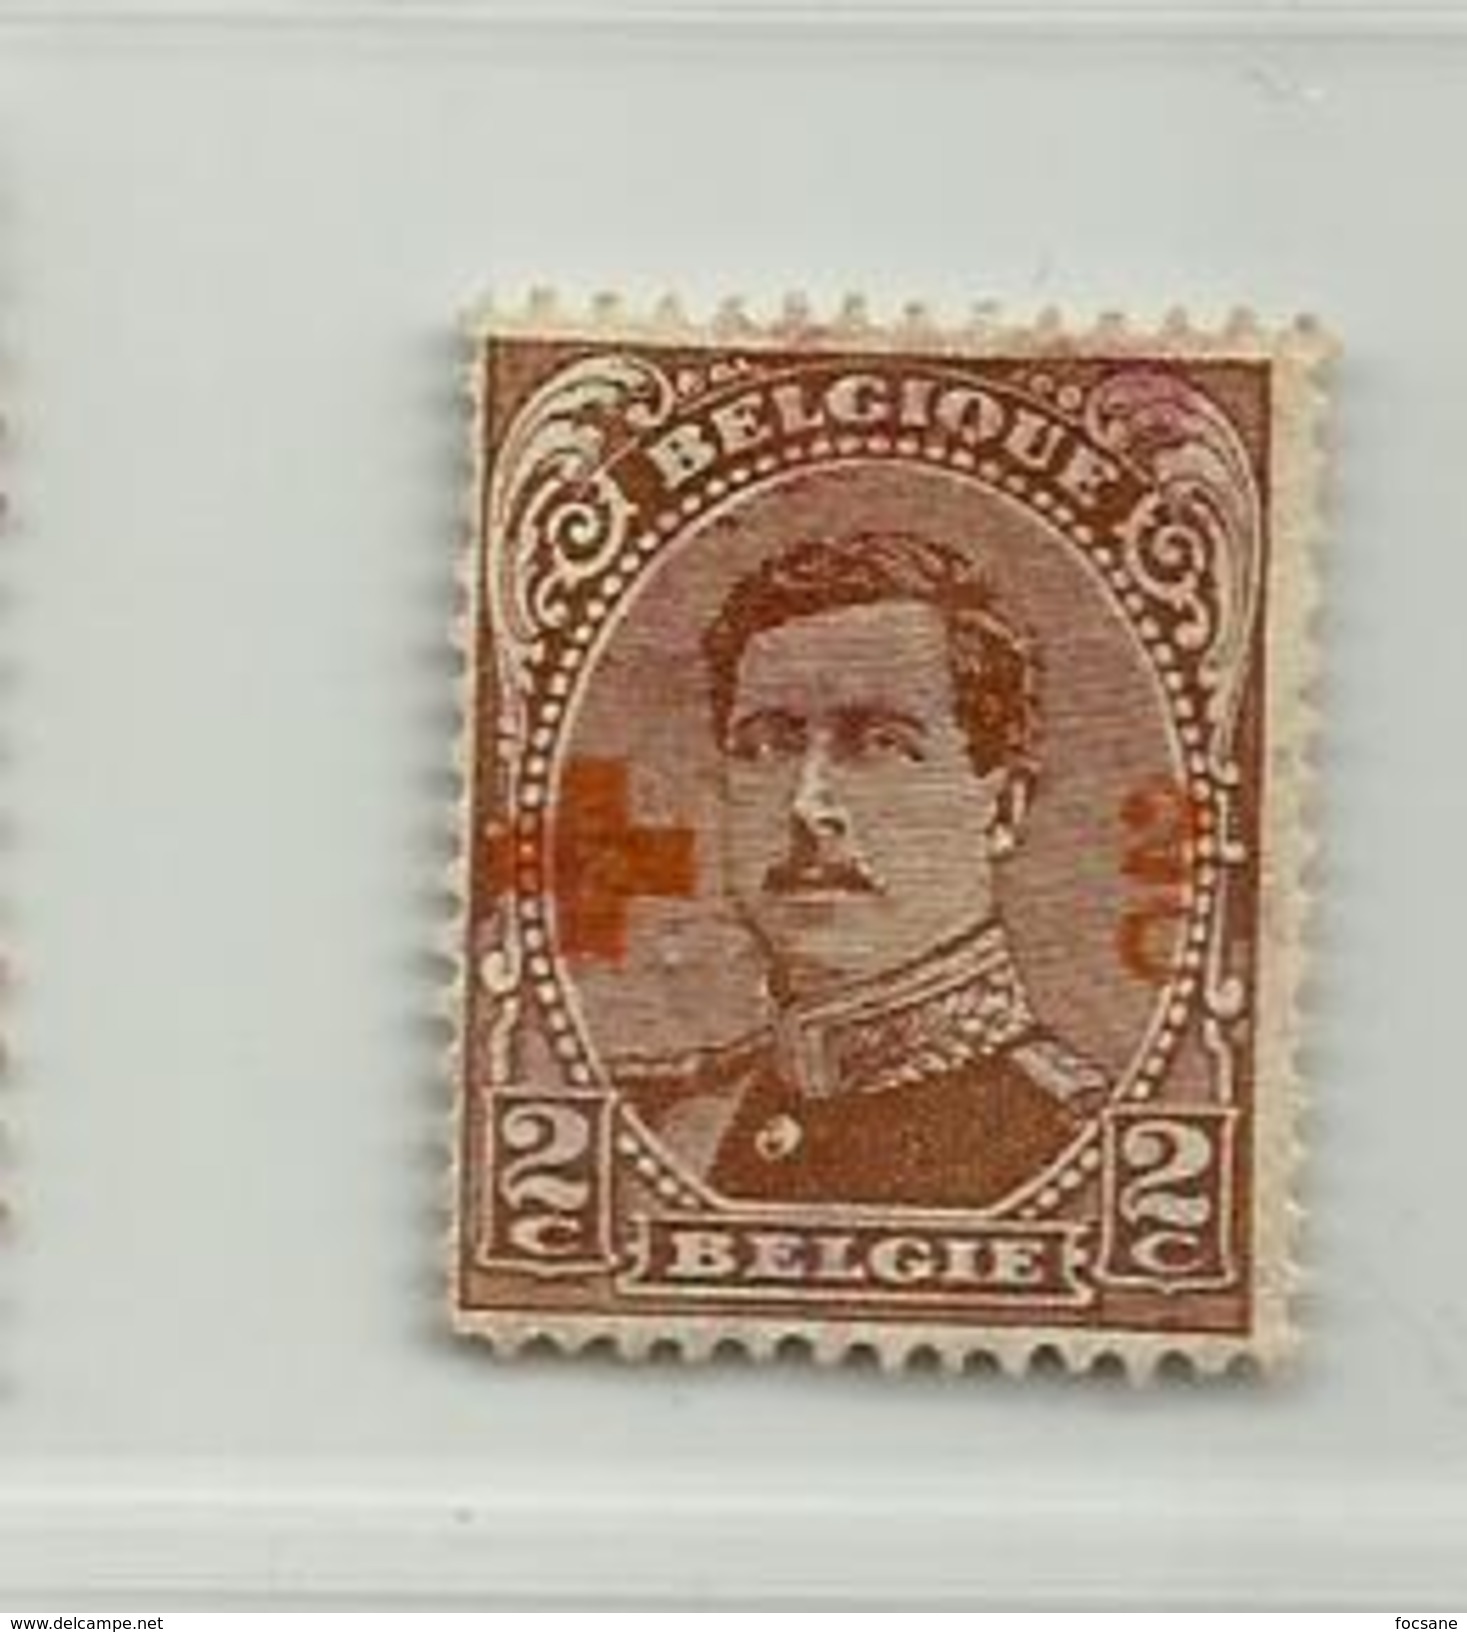 (837) Timbre Belgique Croix-Rouge   N° 151 - 2c + 2c - 1918 Croix-Rouge